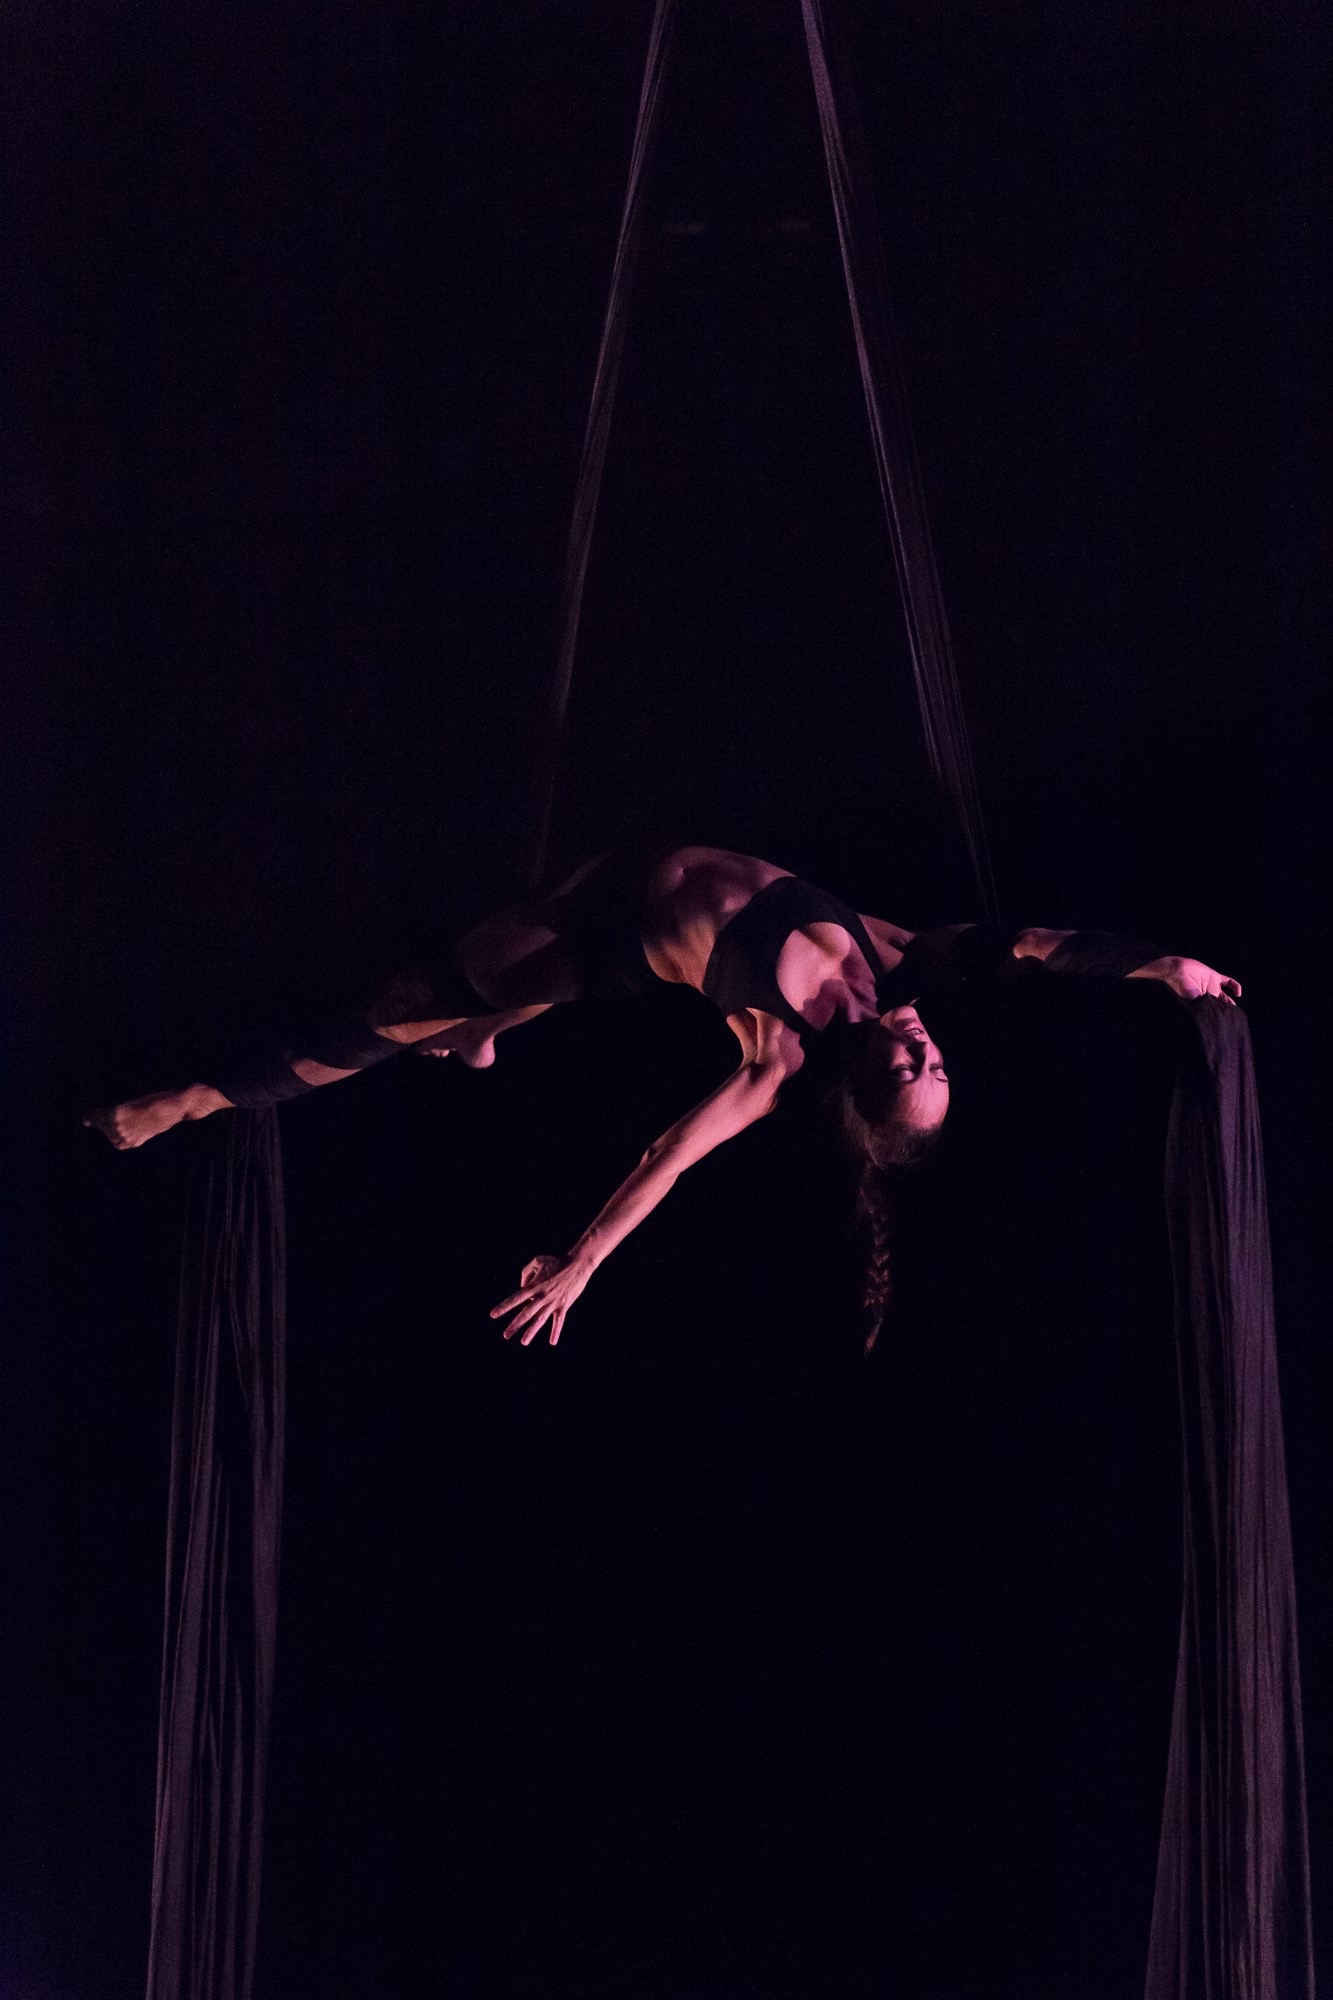 Aerial Silk Trapeze Porn - Aerial Dance Festival Wrap Up 2016 | www.aerialdancing.com